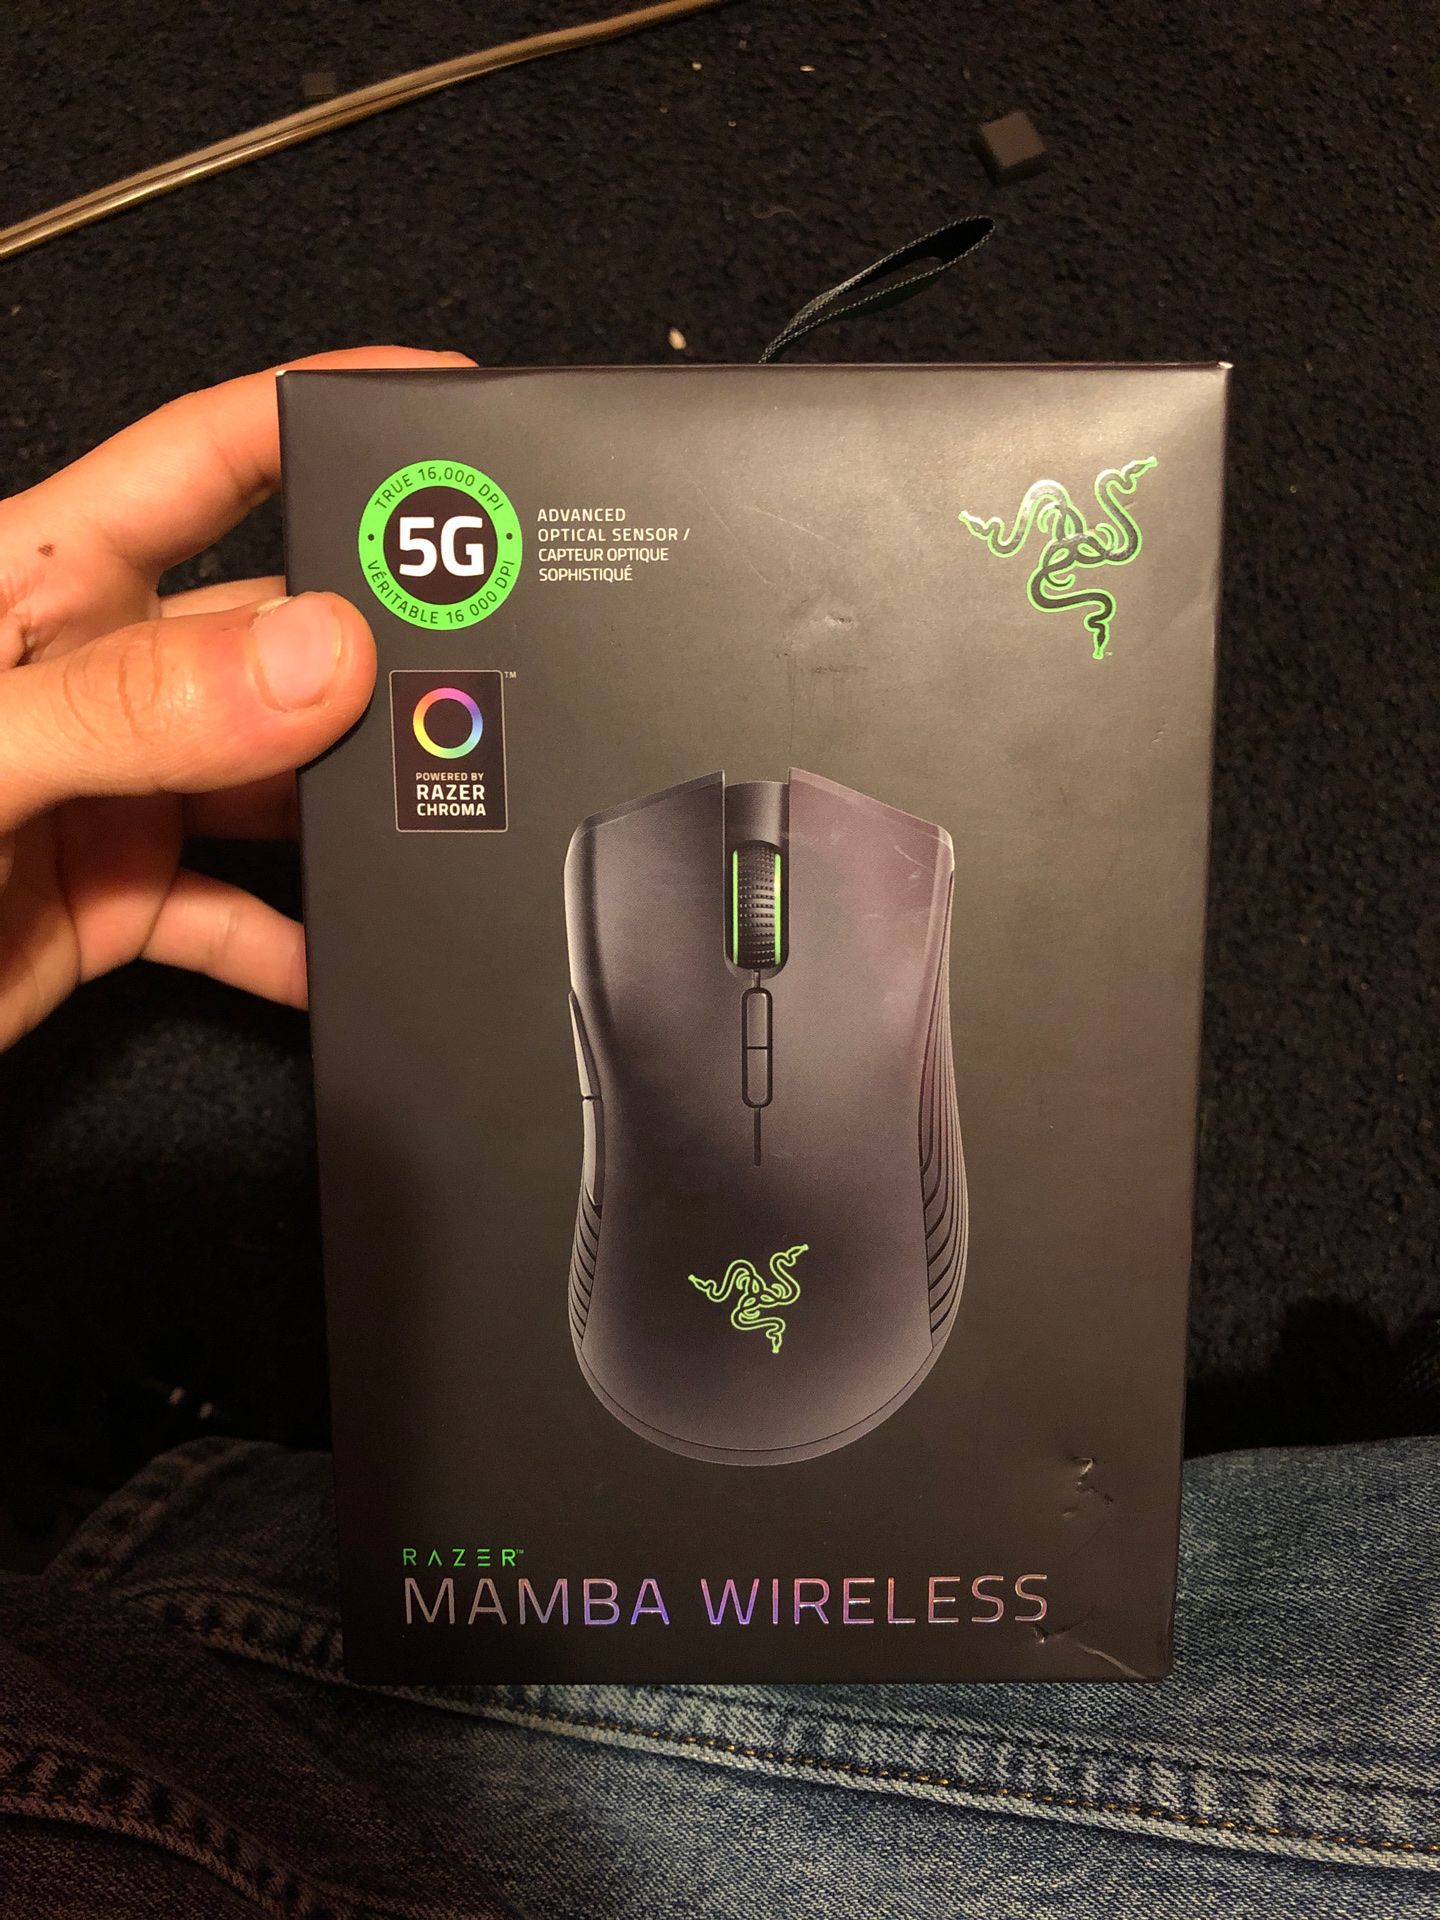 Razer mamba wireless gaming mouse